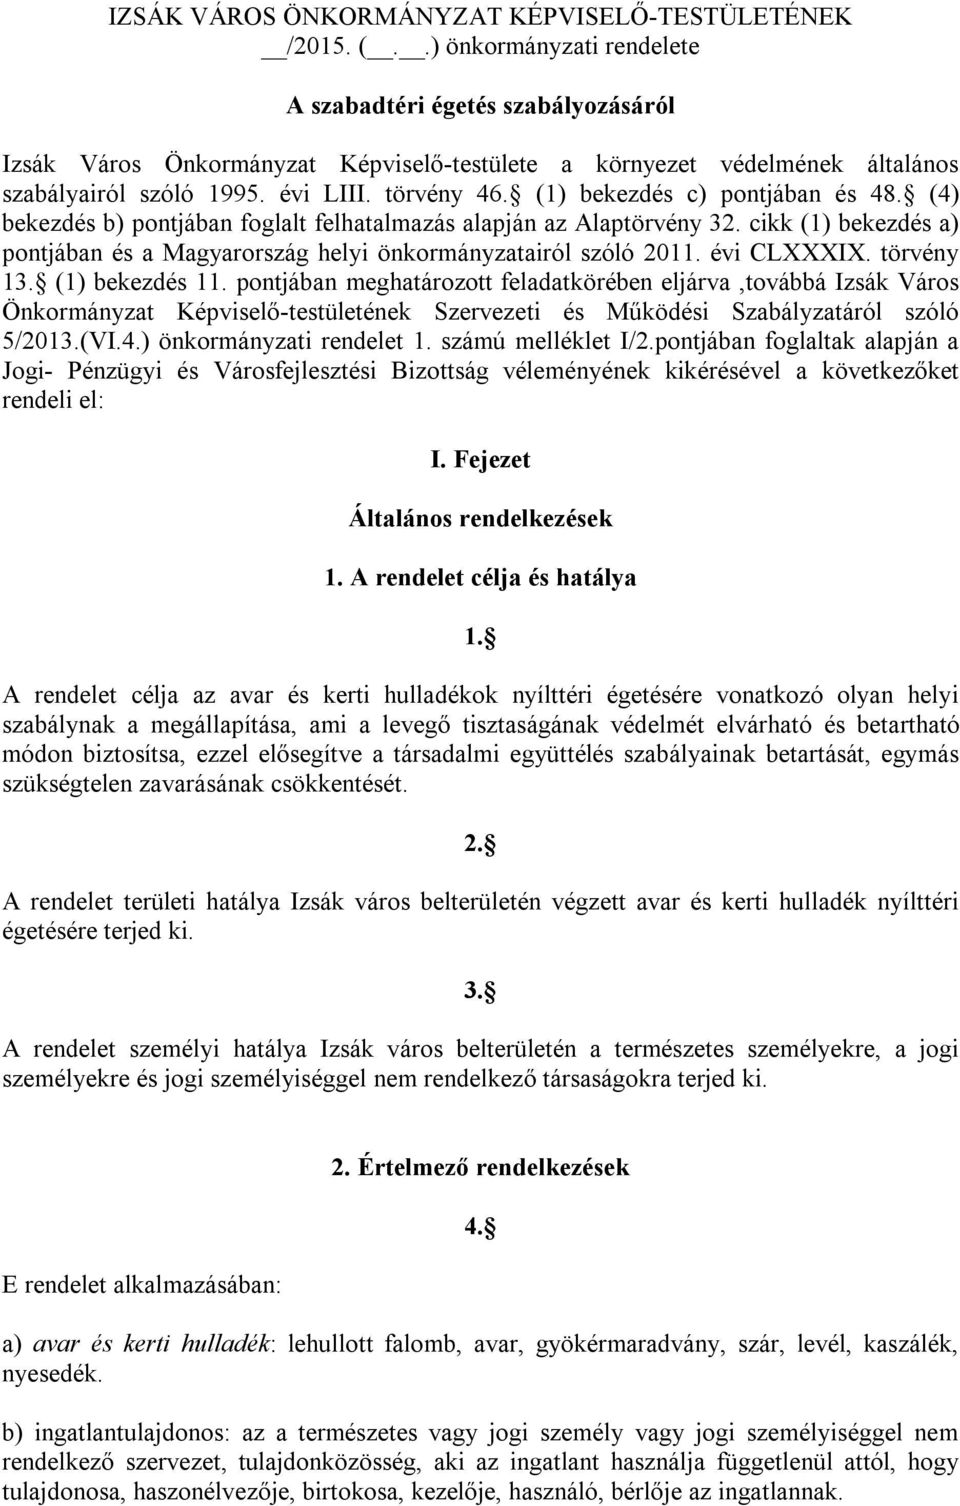 (1) bekezdés c) pontjában és 48. (4) bekezdés b) pontjában foglalt felhatalmazás alapján az Alaptörvény 32. cikk (1) bekezdés a) pontjában és a Magyarország helyi önkormányzatairól szóló 2011.